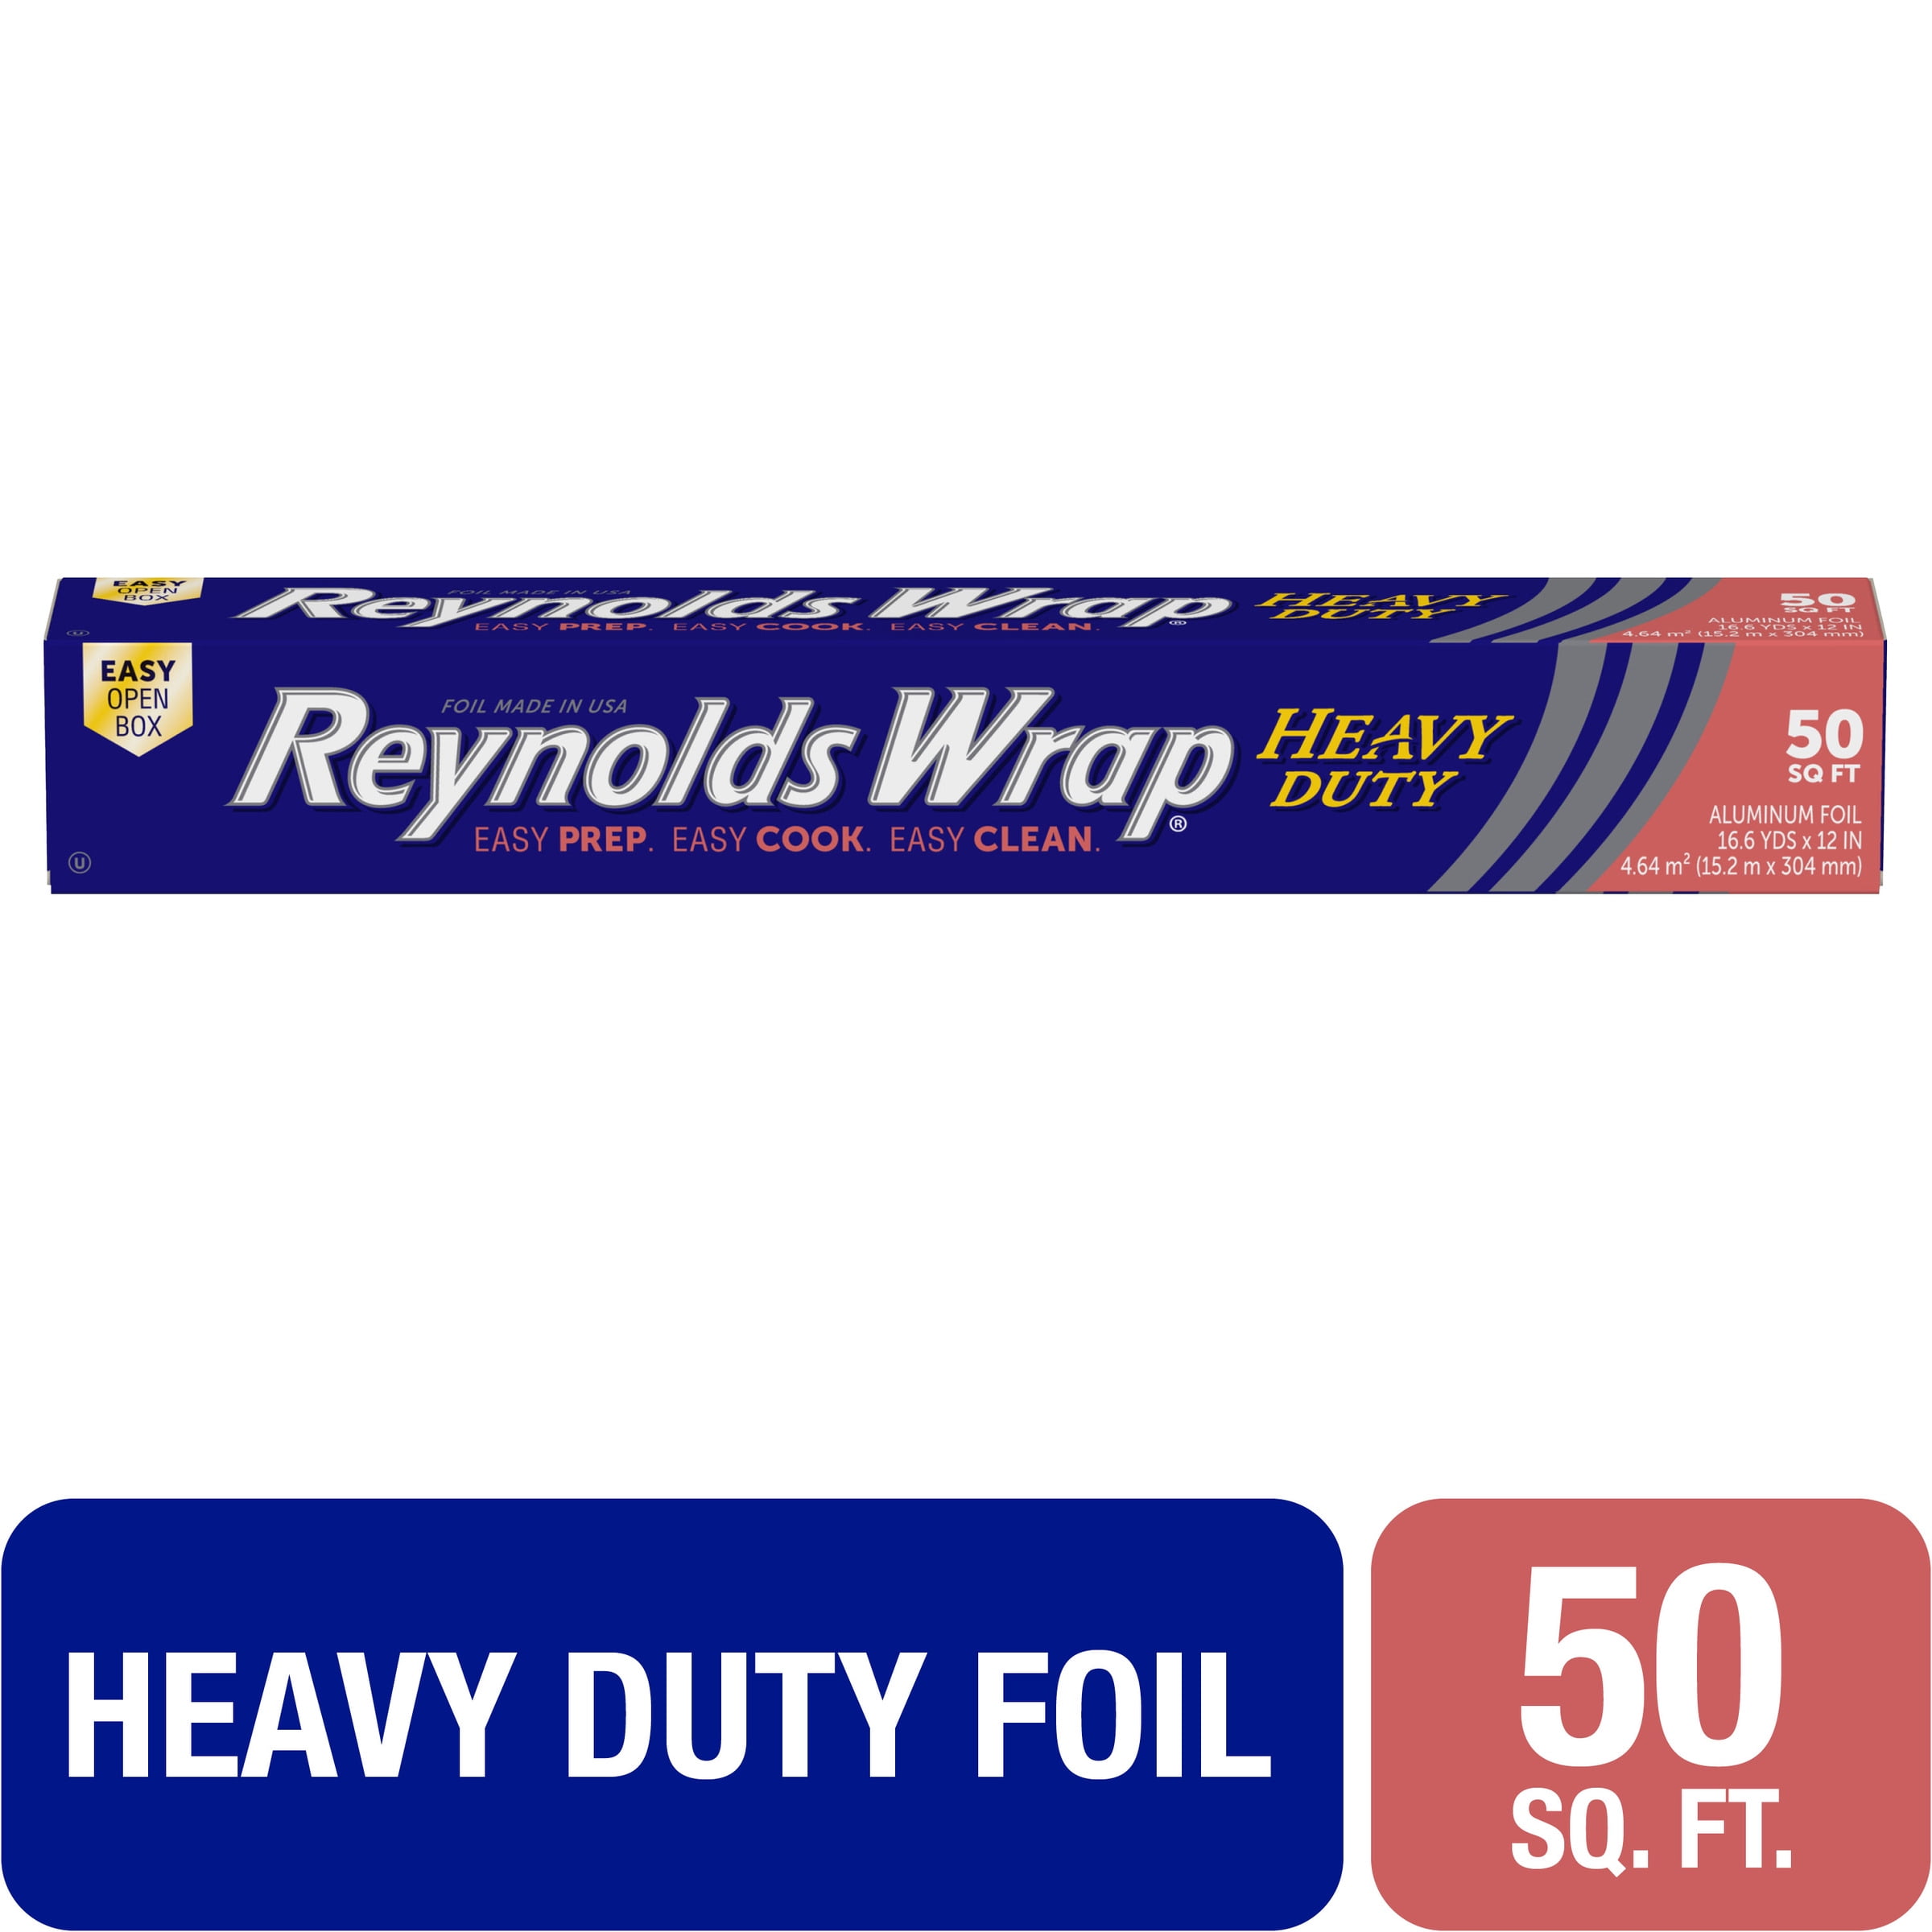 Reynolds Wrap Heavy Duty Aluminum Foil Roll 18" X 75 FT Silver F28028 for sale online 